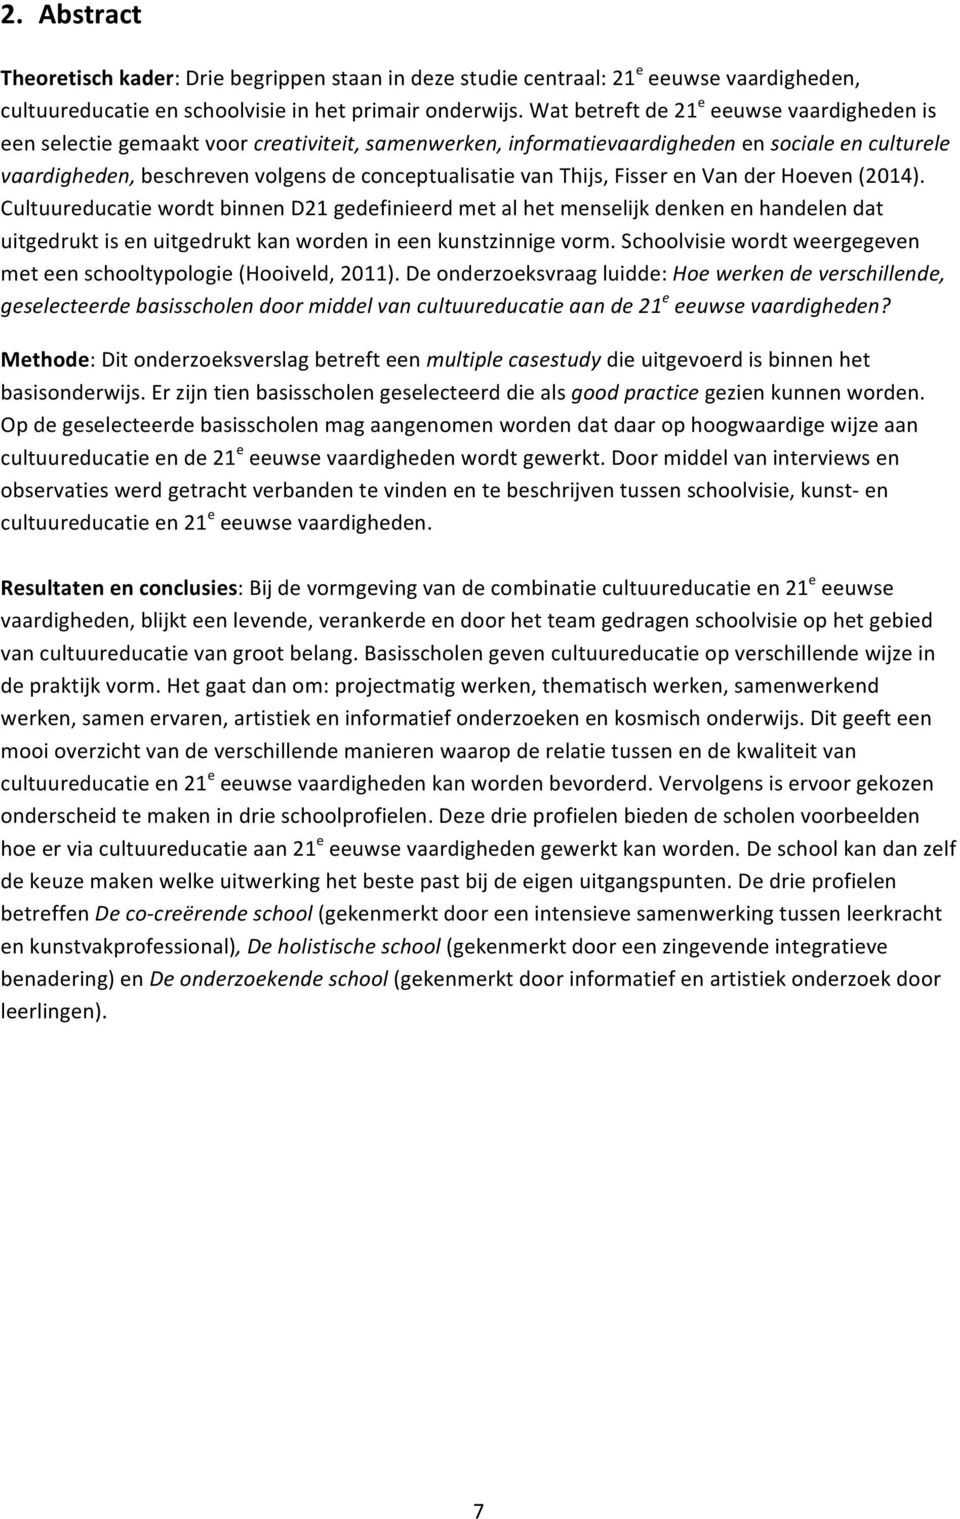 vaardigheden,beschrevenvolgensdeconceptualisatievanthijs,fisserenvanderhoeven(2014).